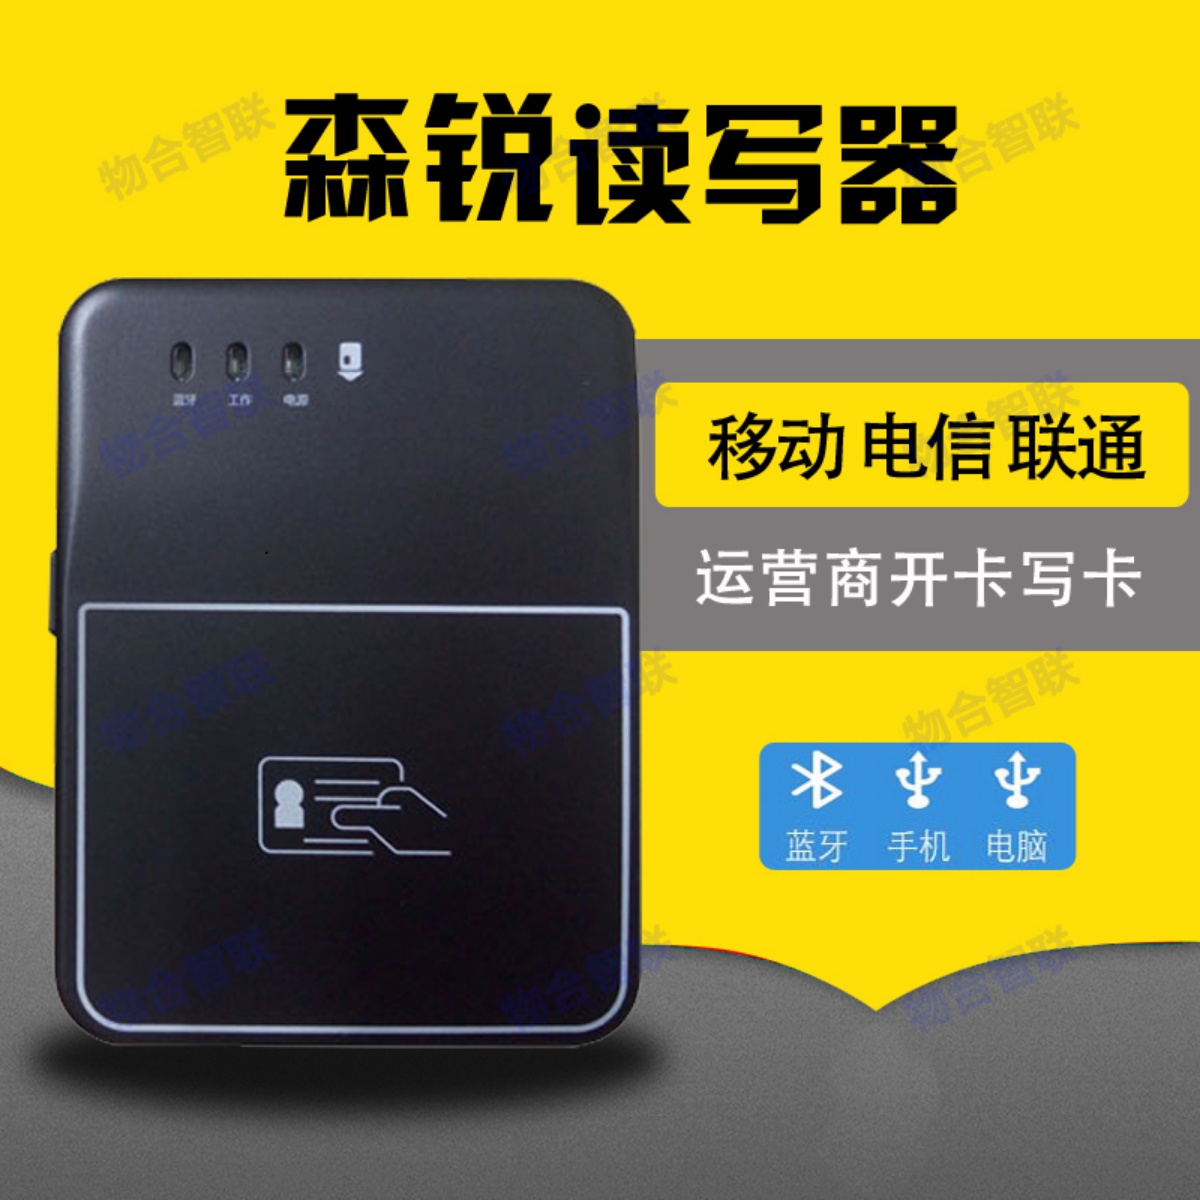 Senrui Bluetooth カード リーダー 第 2 世代および第 3 世代 ID カード リーダー China Unicom Mobile Telecom の 3 つのネットワーク カードの開封と書き込み